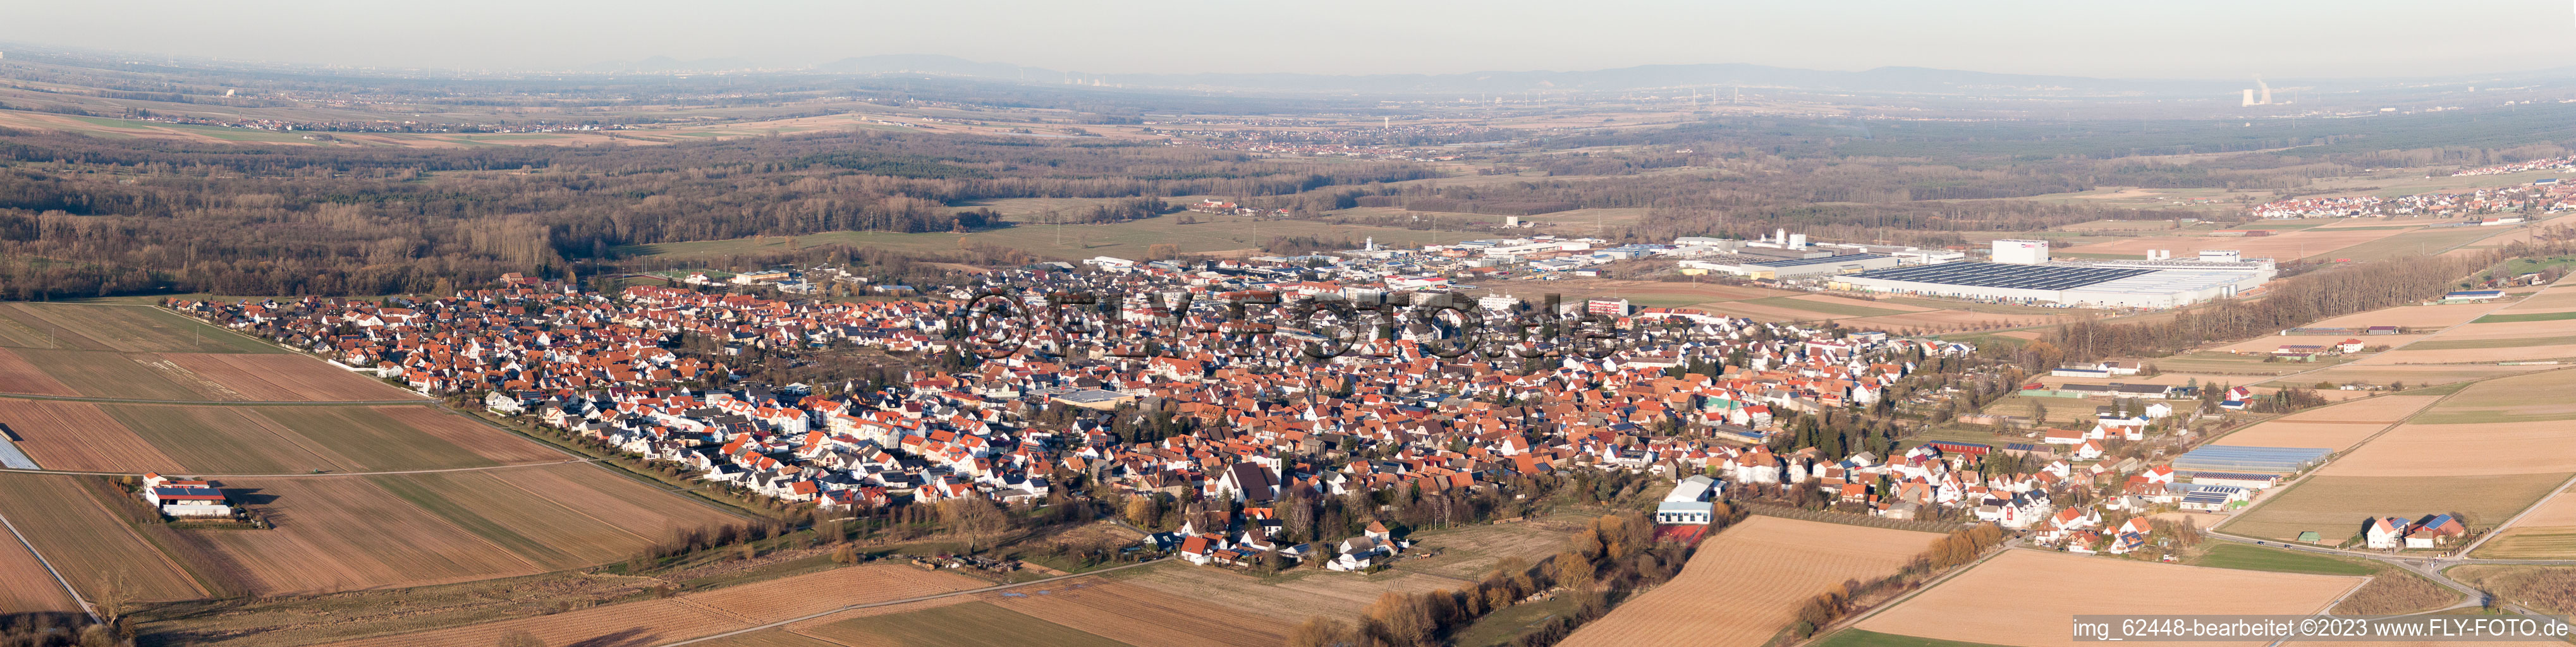 Photographie aérienne de Panorama à Offenbach an der Queich dans le département Rhénanie-Palatinat, Allemagne